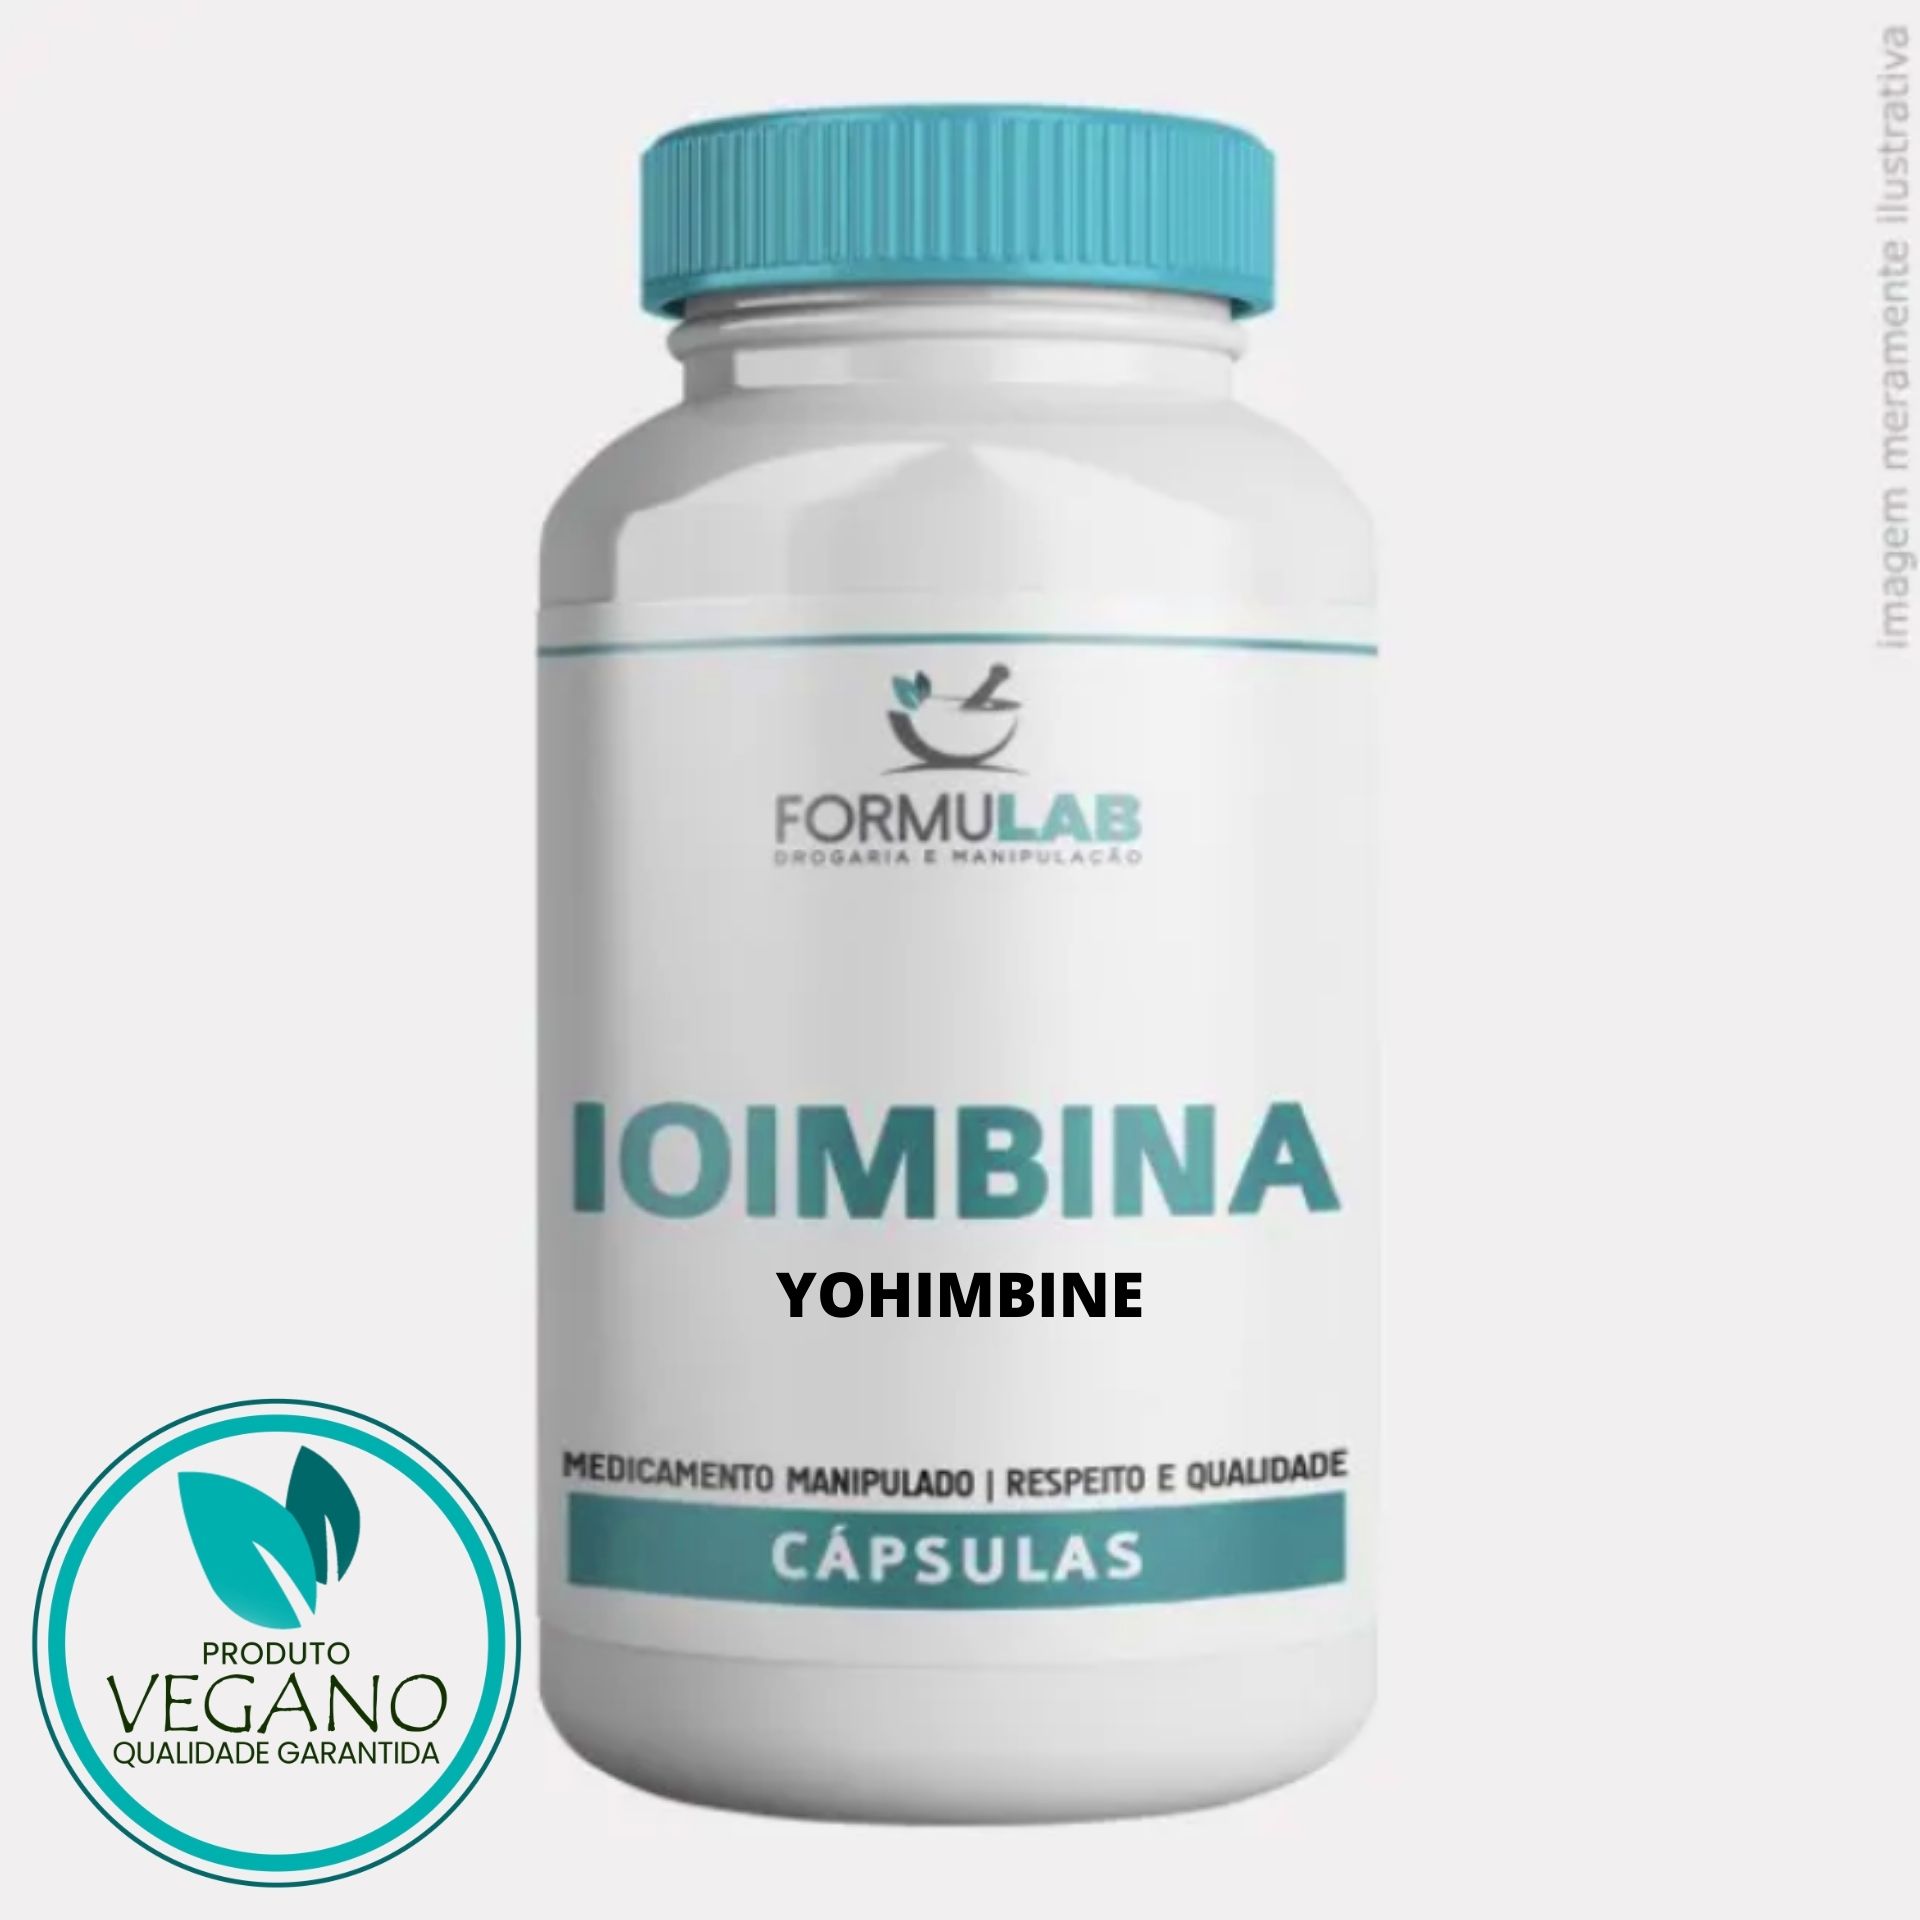 Ioimbina 5mg - Yohimbine Vegan